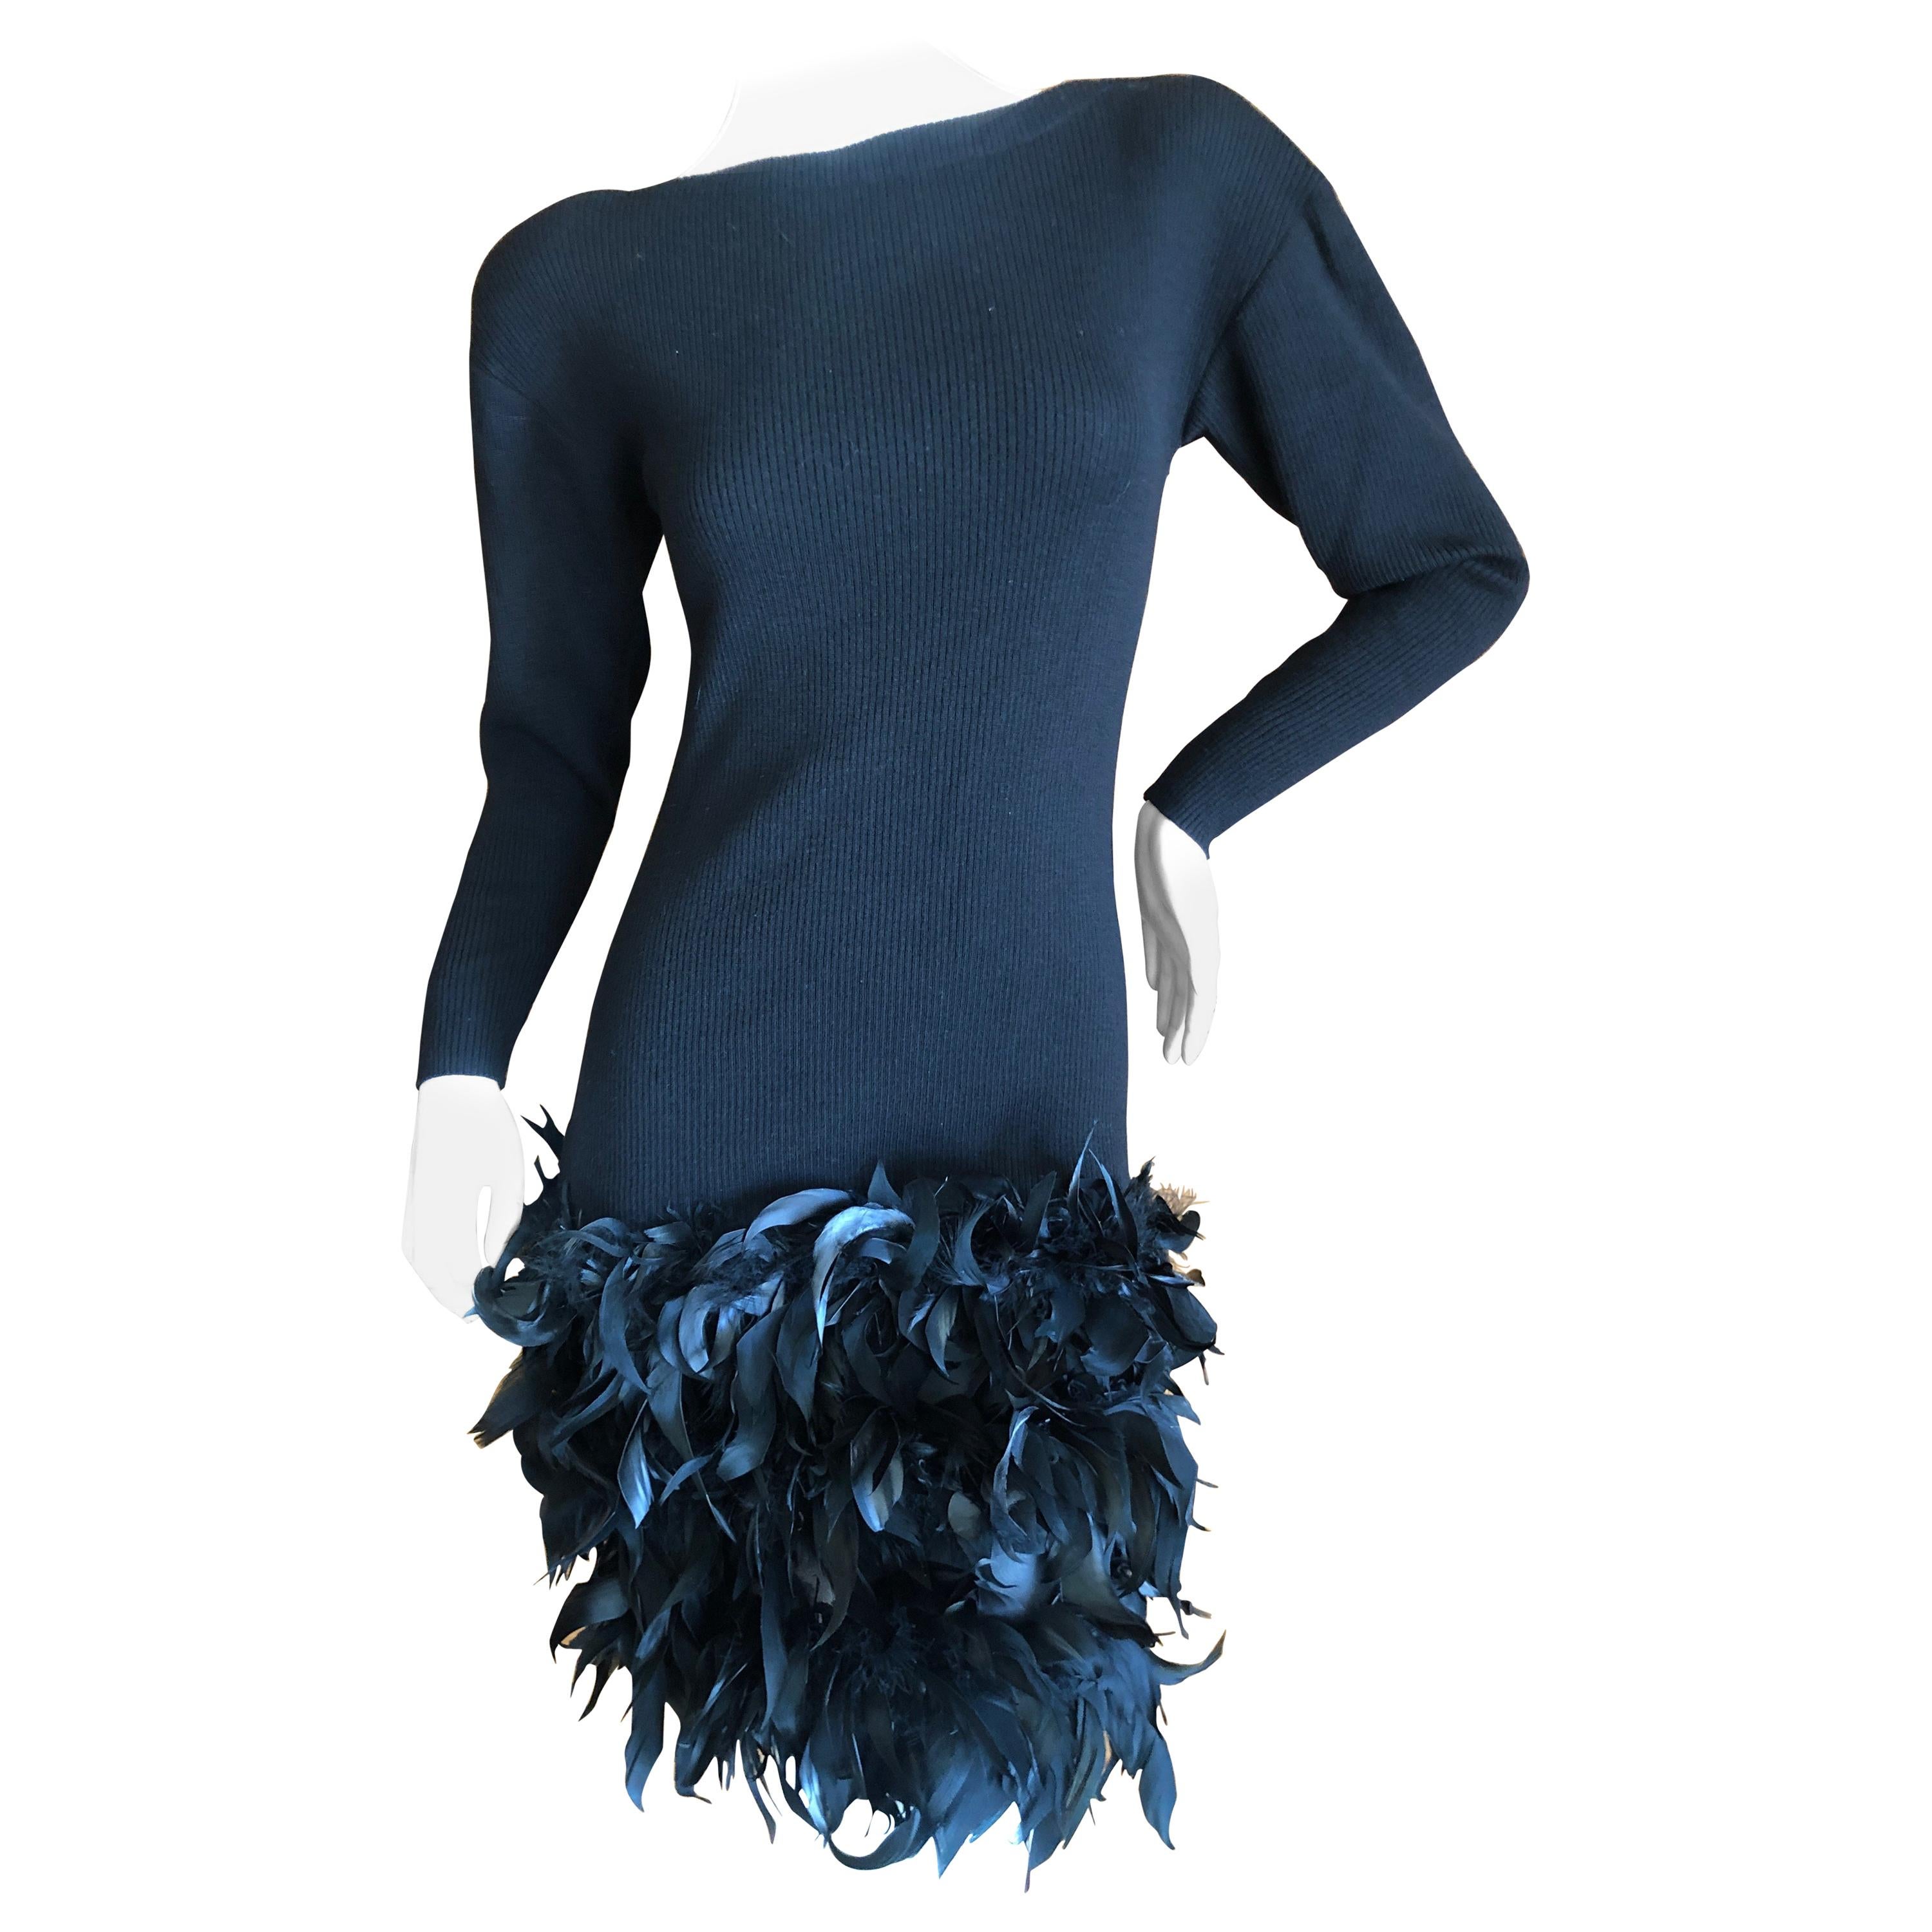 Yves Saint Laurent Rive Gauche Vintage Black Dress w Feathers by Maison Lamari For Sale